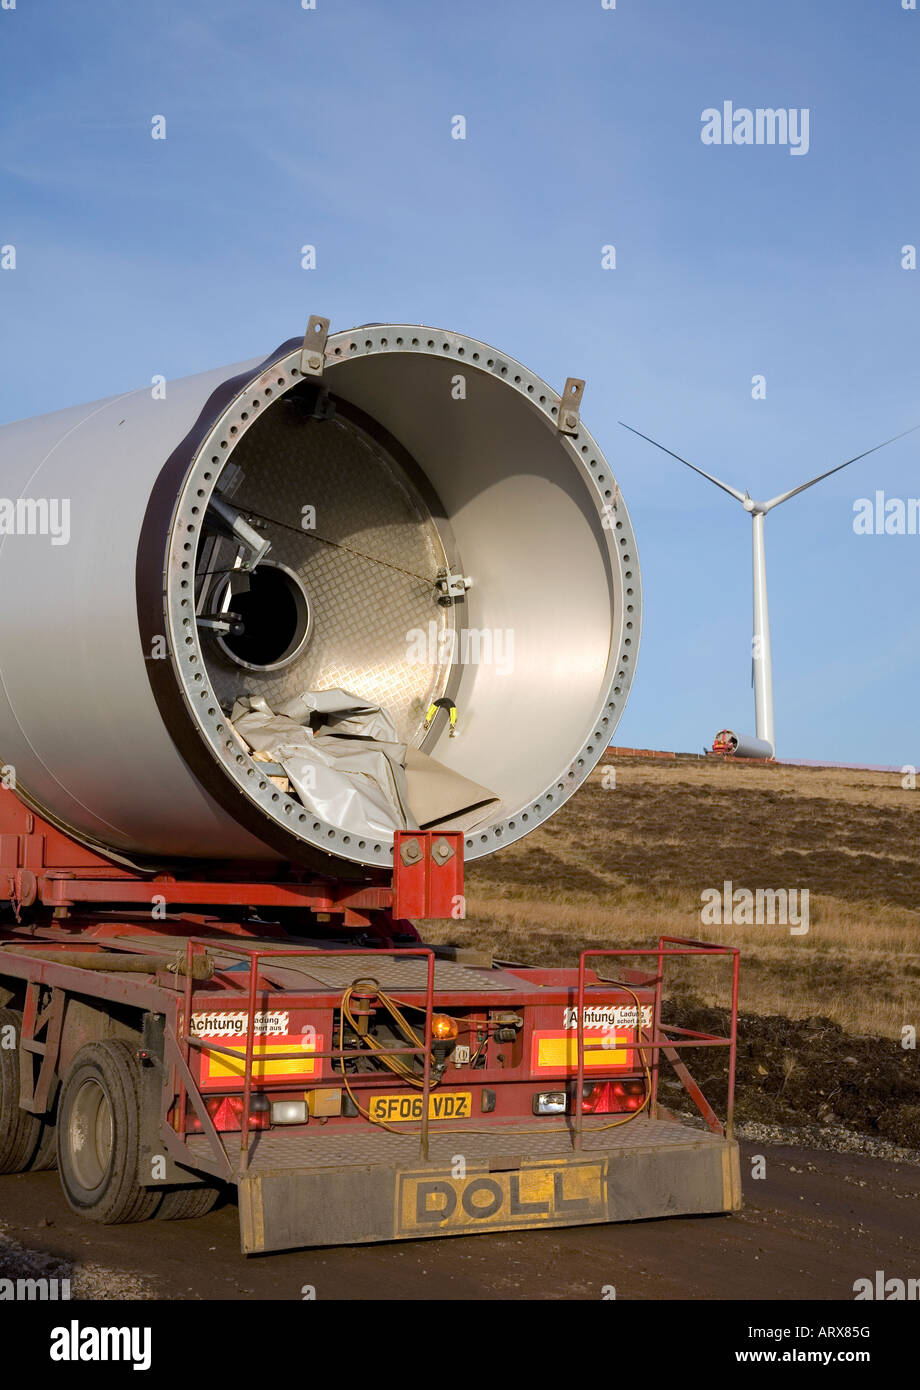 Svaergods Transport Güterverkehr auf der Straße geben, liefern die Windkraftanlagen, windfarm Komponenten Drumderg Ort, Alyth, Schottland, Großbritannien Stockfoto